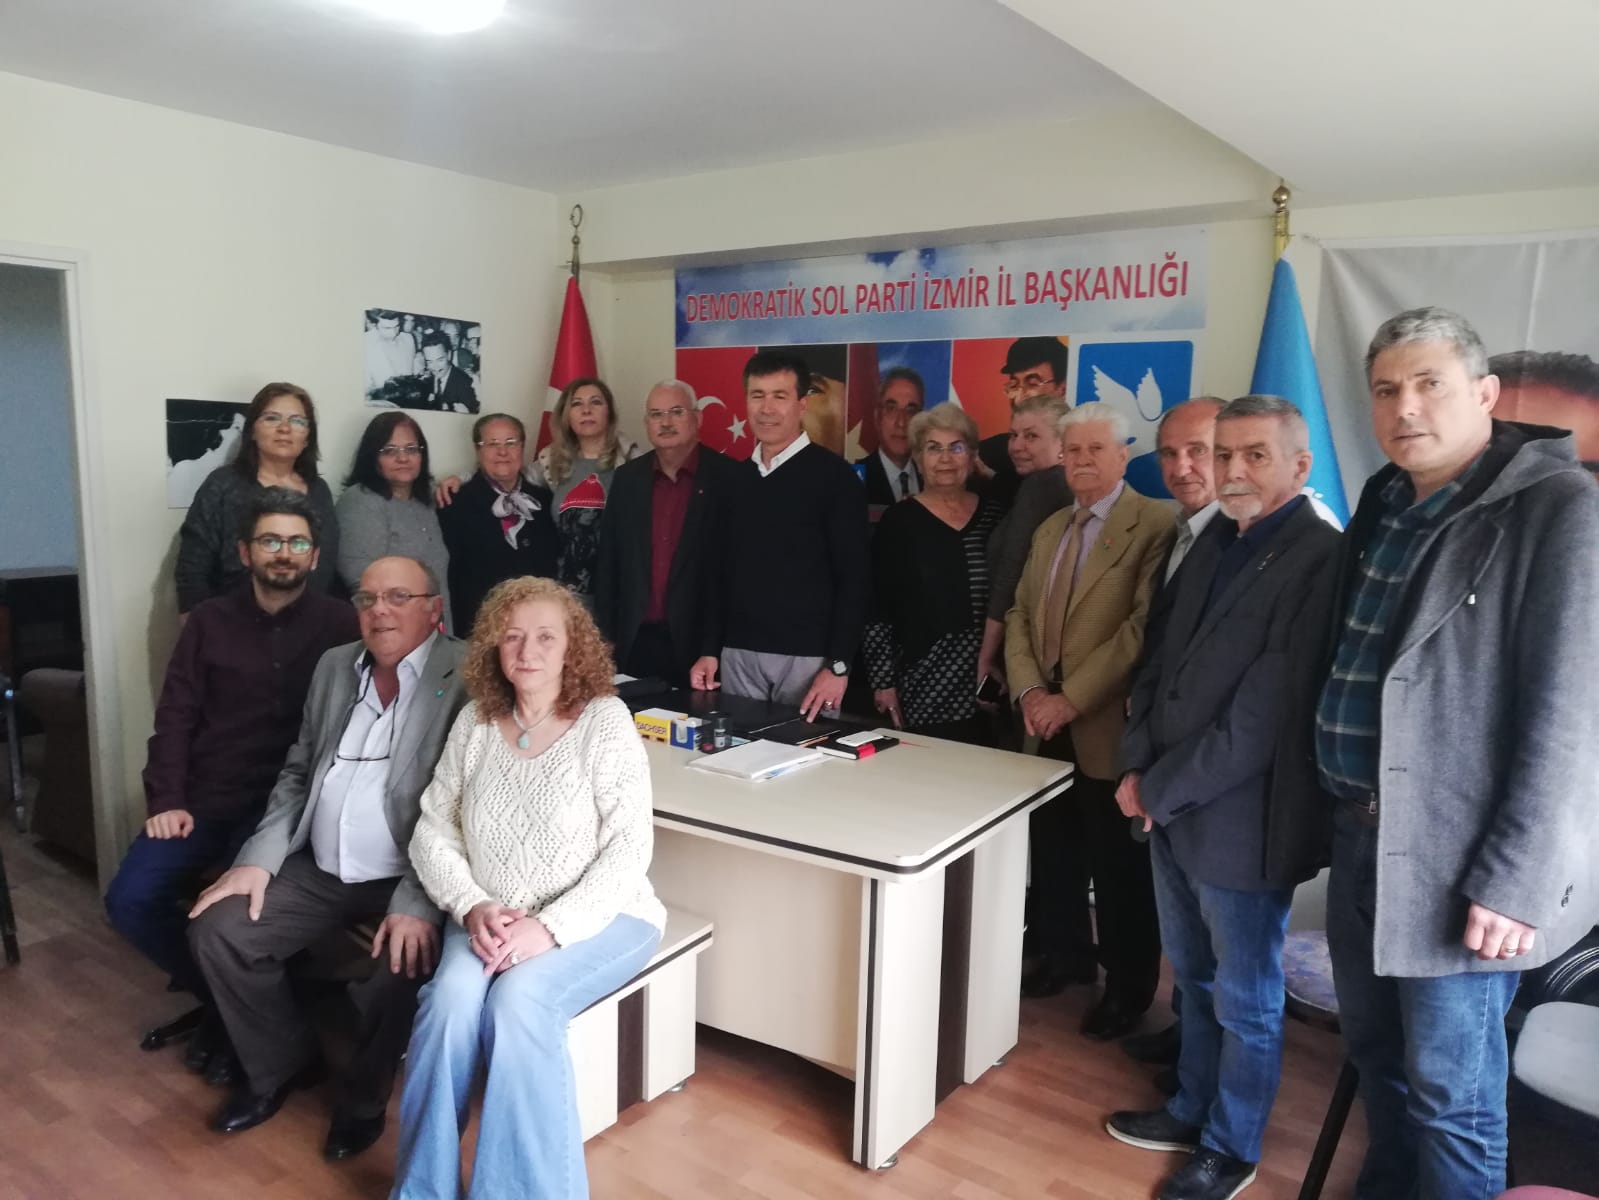 DSP İzmir İl Başkanlığı Yerel Seçimlerin Değerlendirilme Toplantısı  Yaptı.